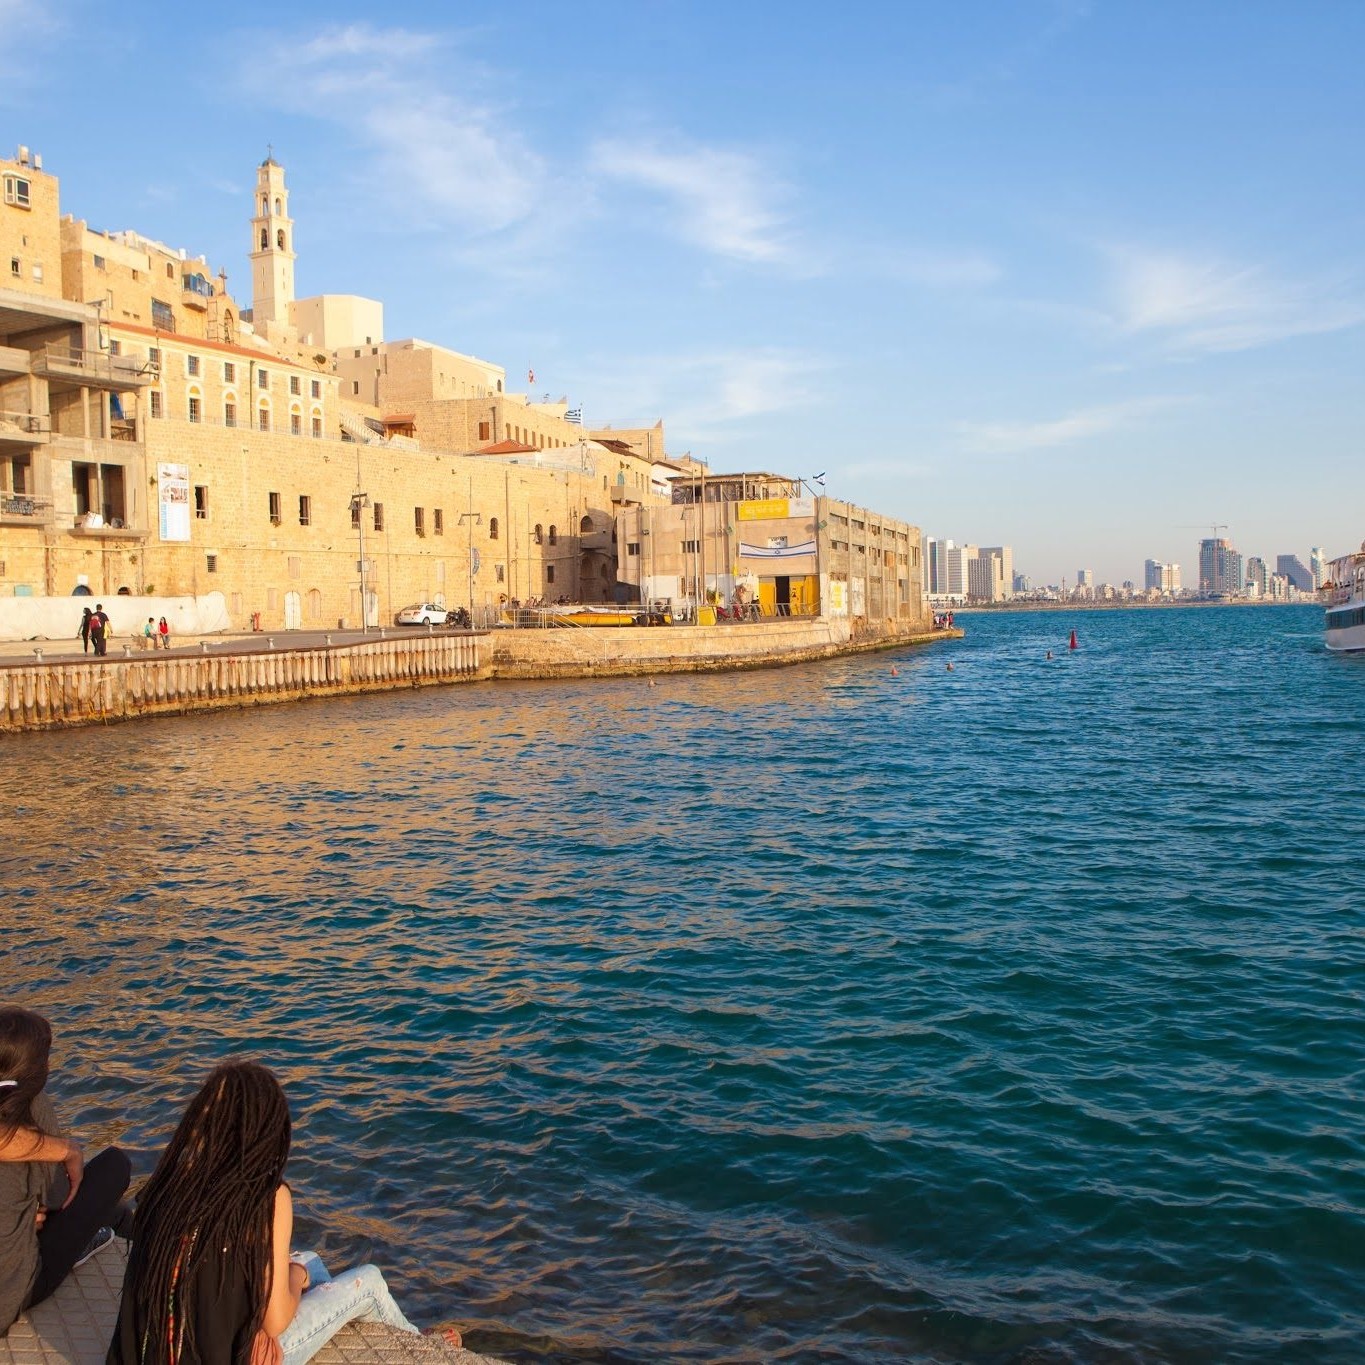 Israel - Jaffa Port